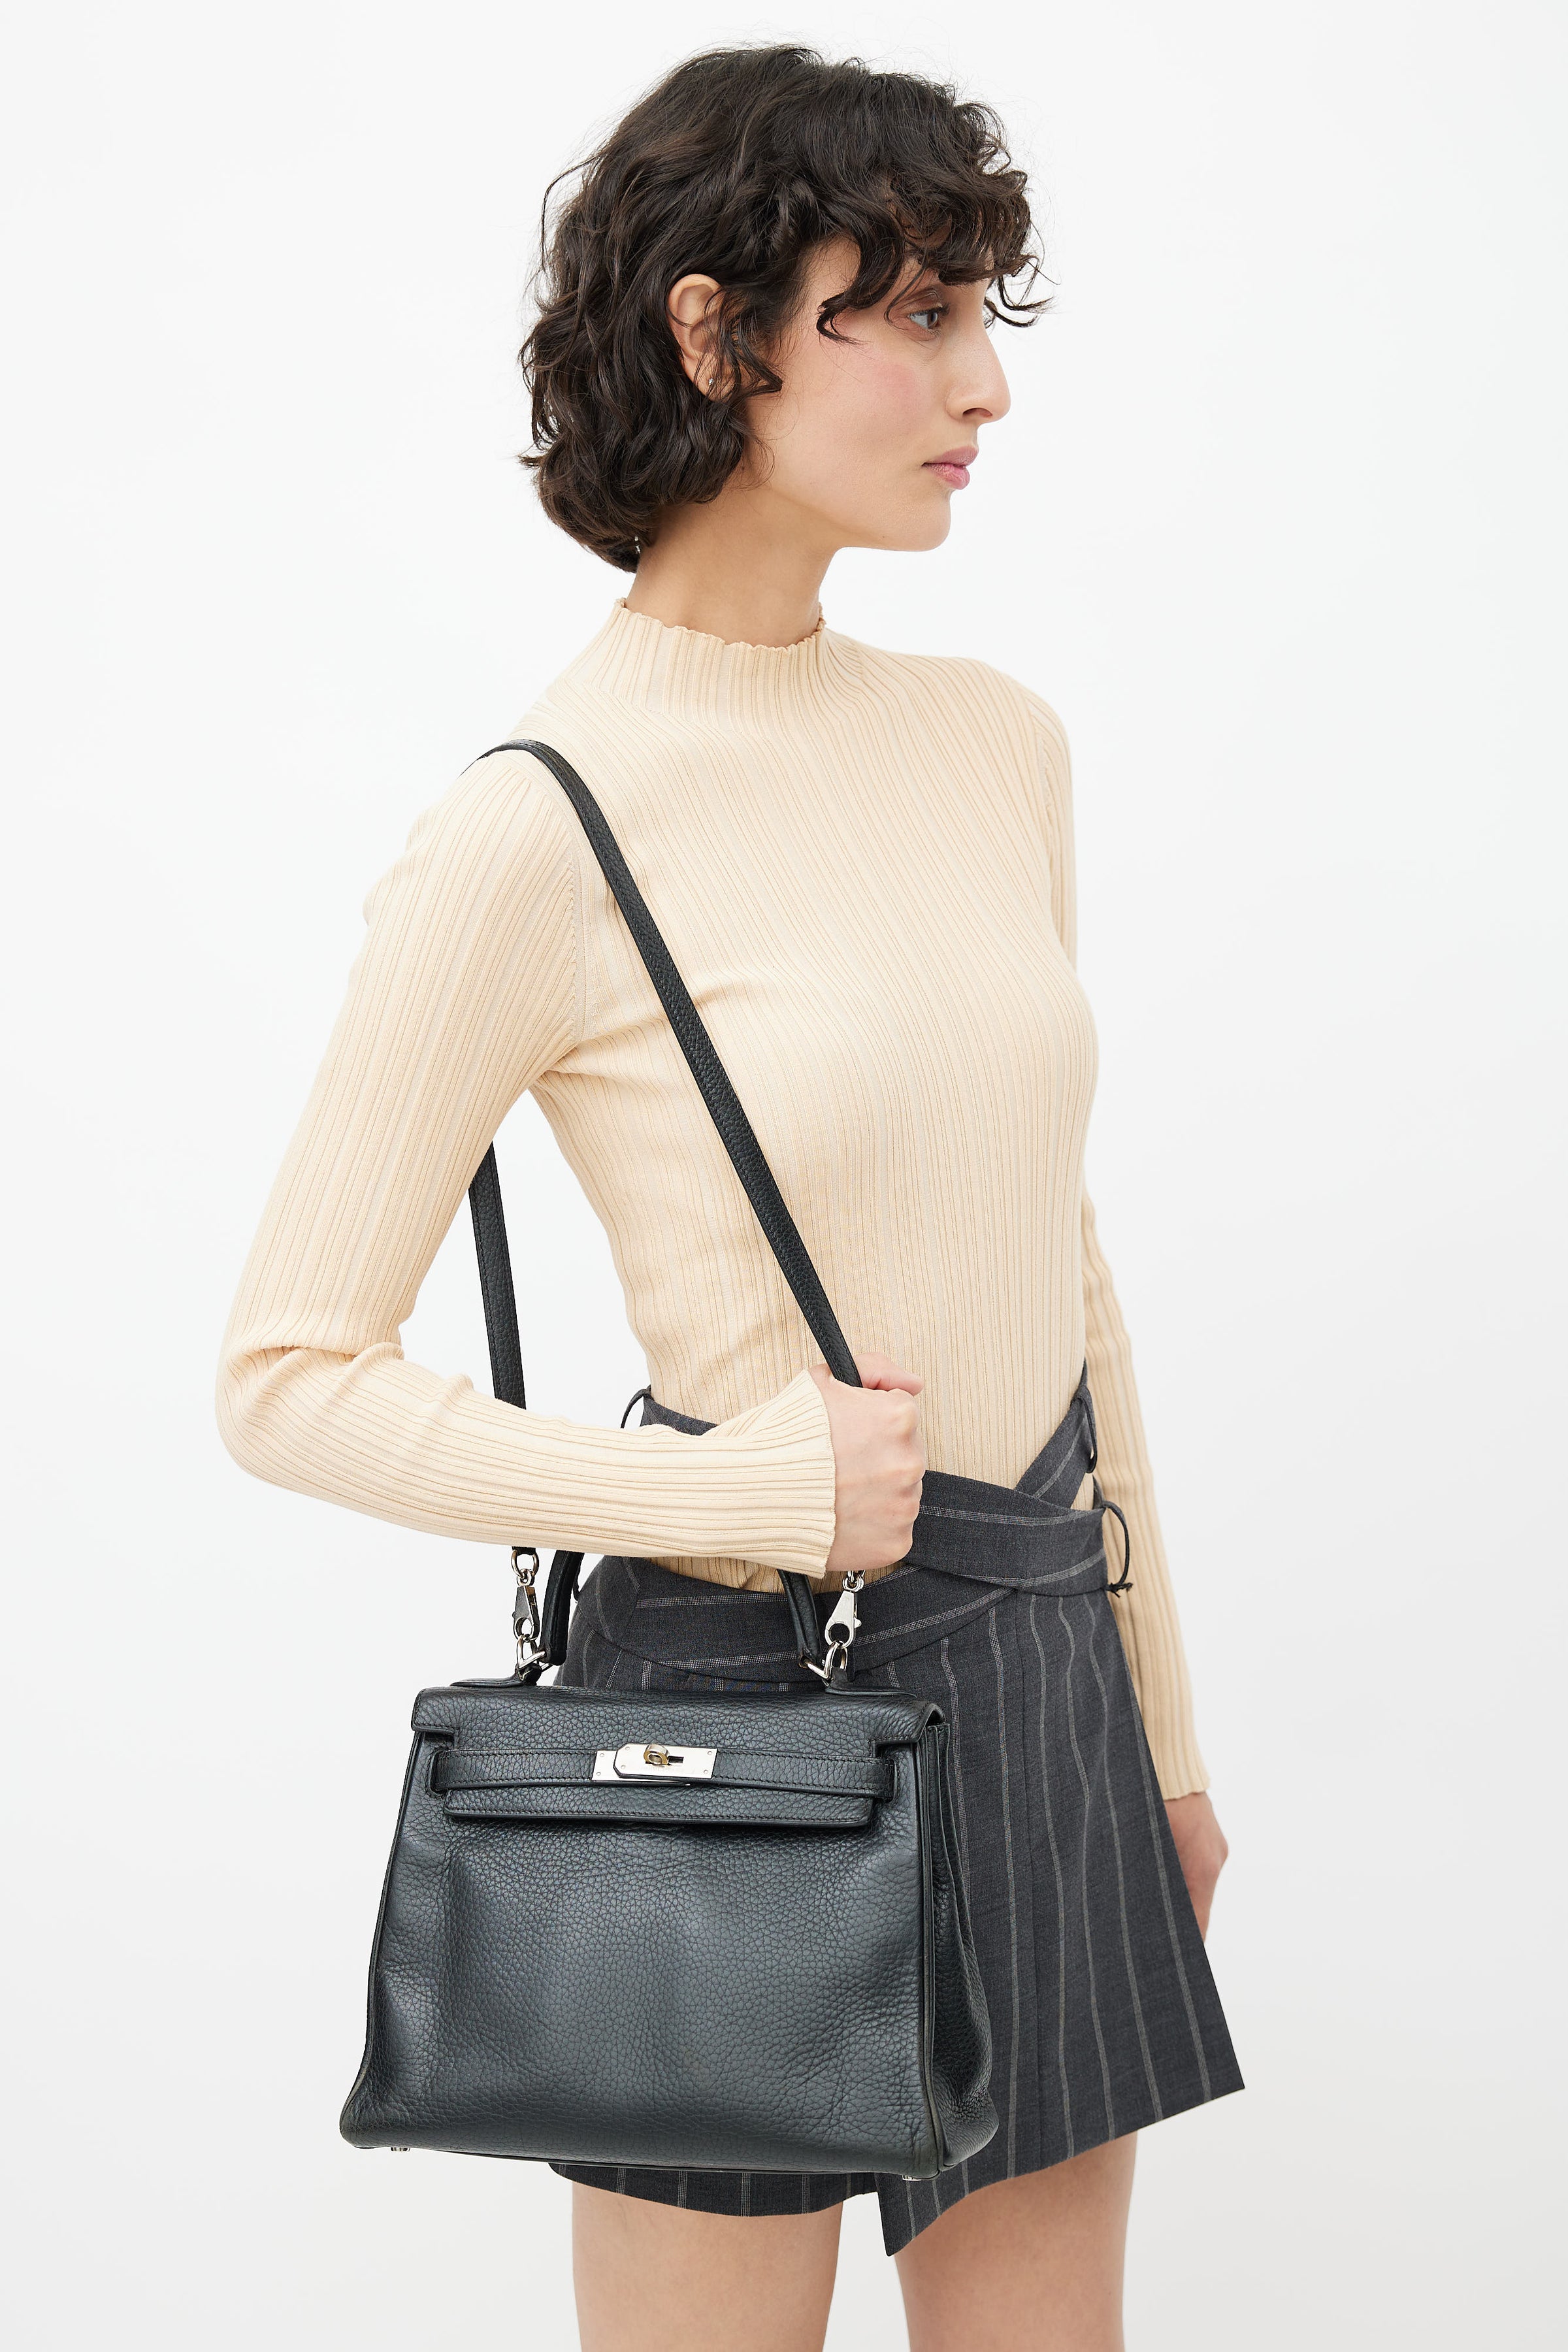 Hermès Clemence Kelly Retourne 40 - Brown Handle Bags, Handbags